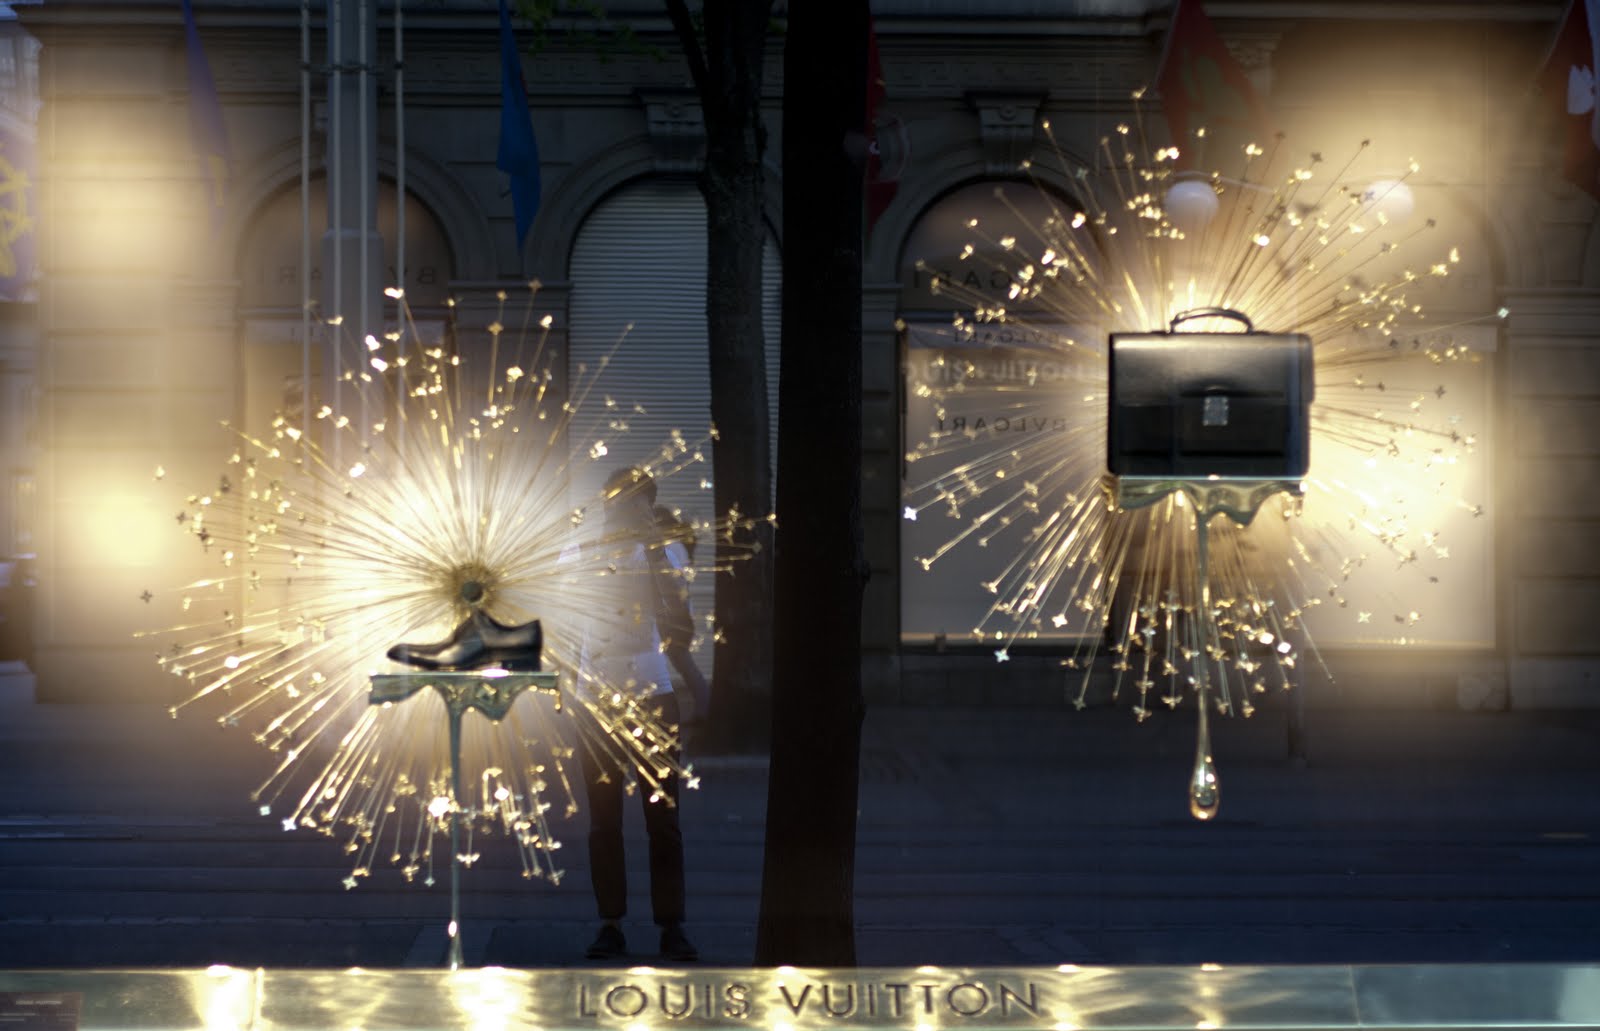 : Louis Vuitton Flagship Store Zurich